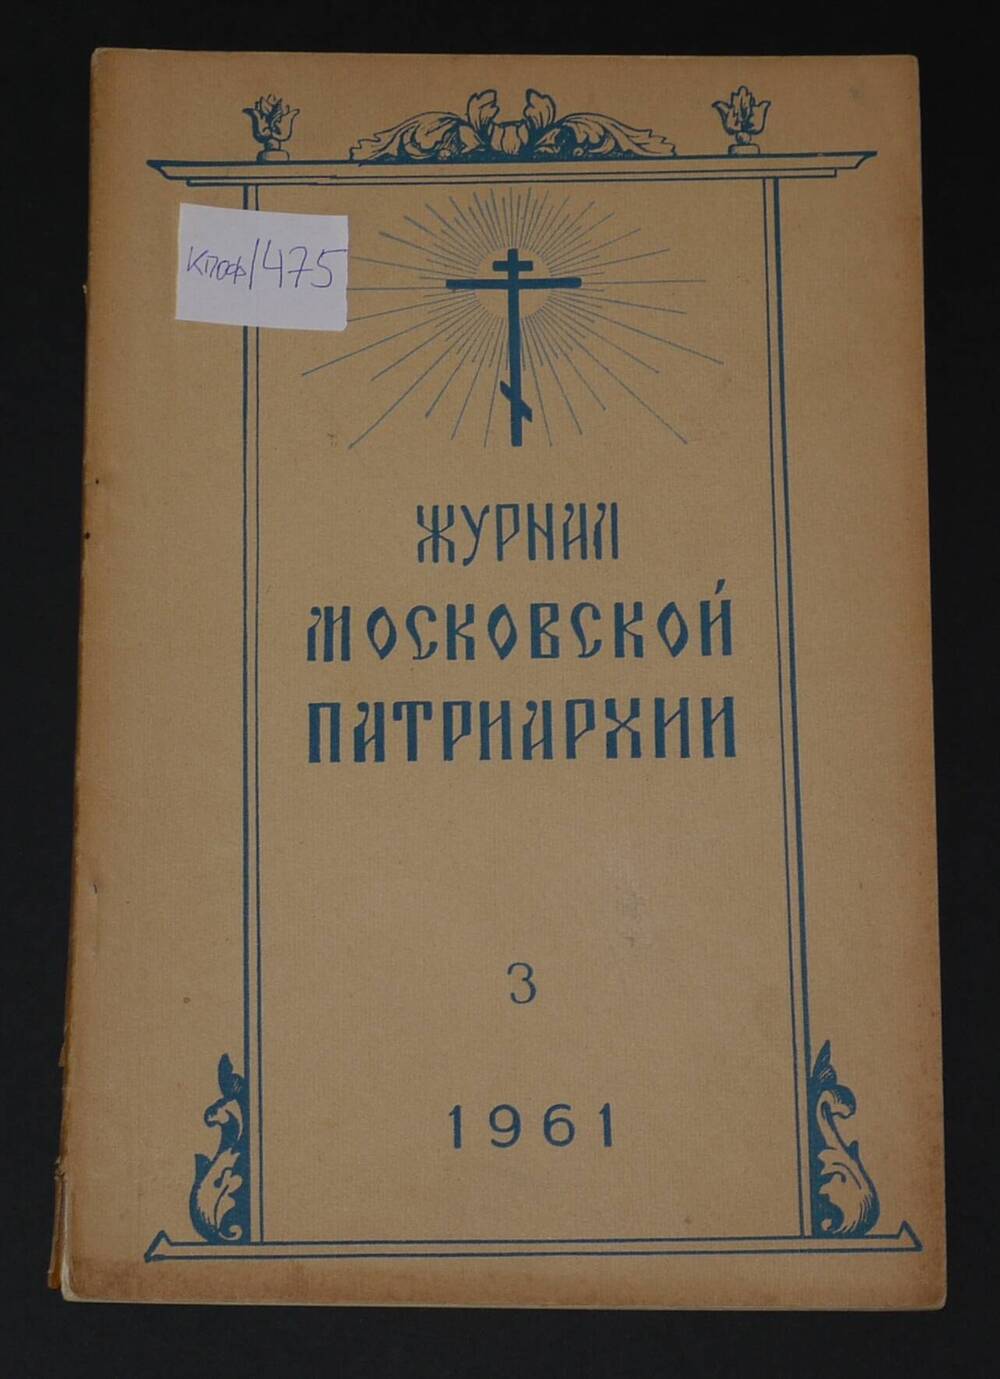 Журнал Московской Патриархии №3, 1961г.